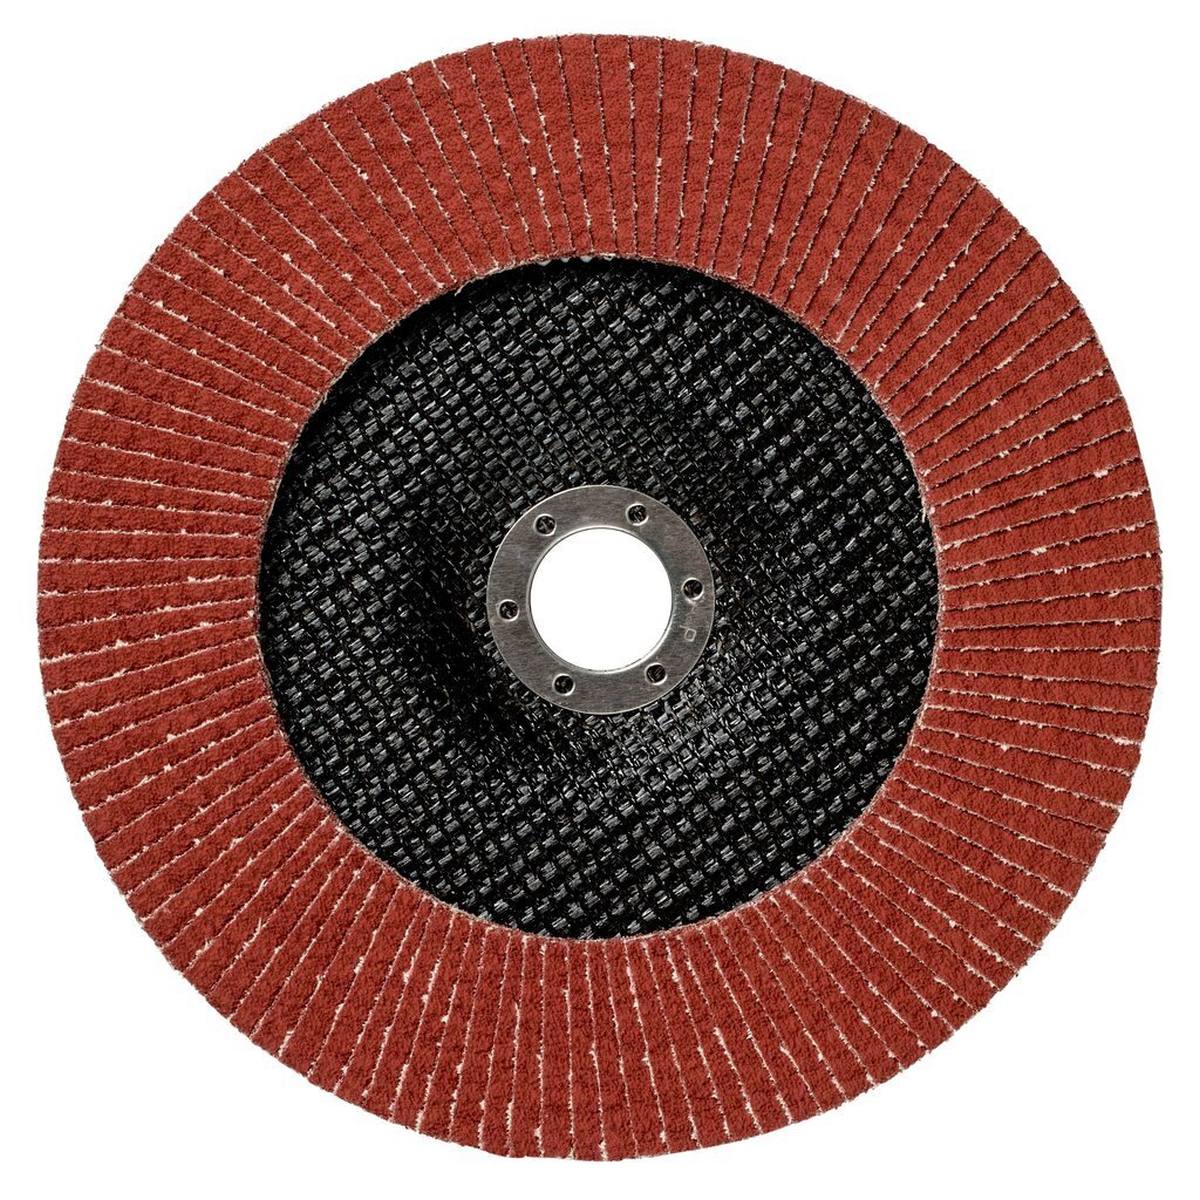 3M Cubitron II flap disc 967A, 180 mm, 22.23 mm, P80+ #65074 flat